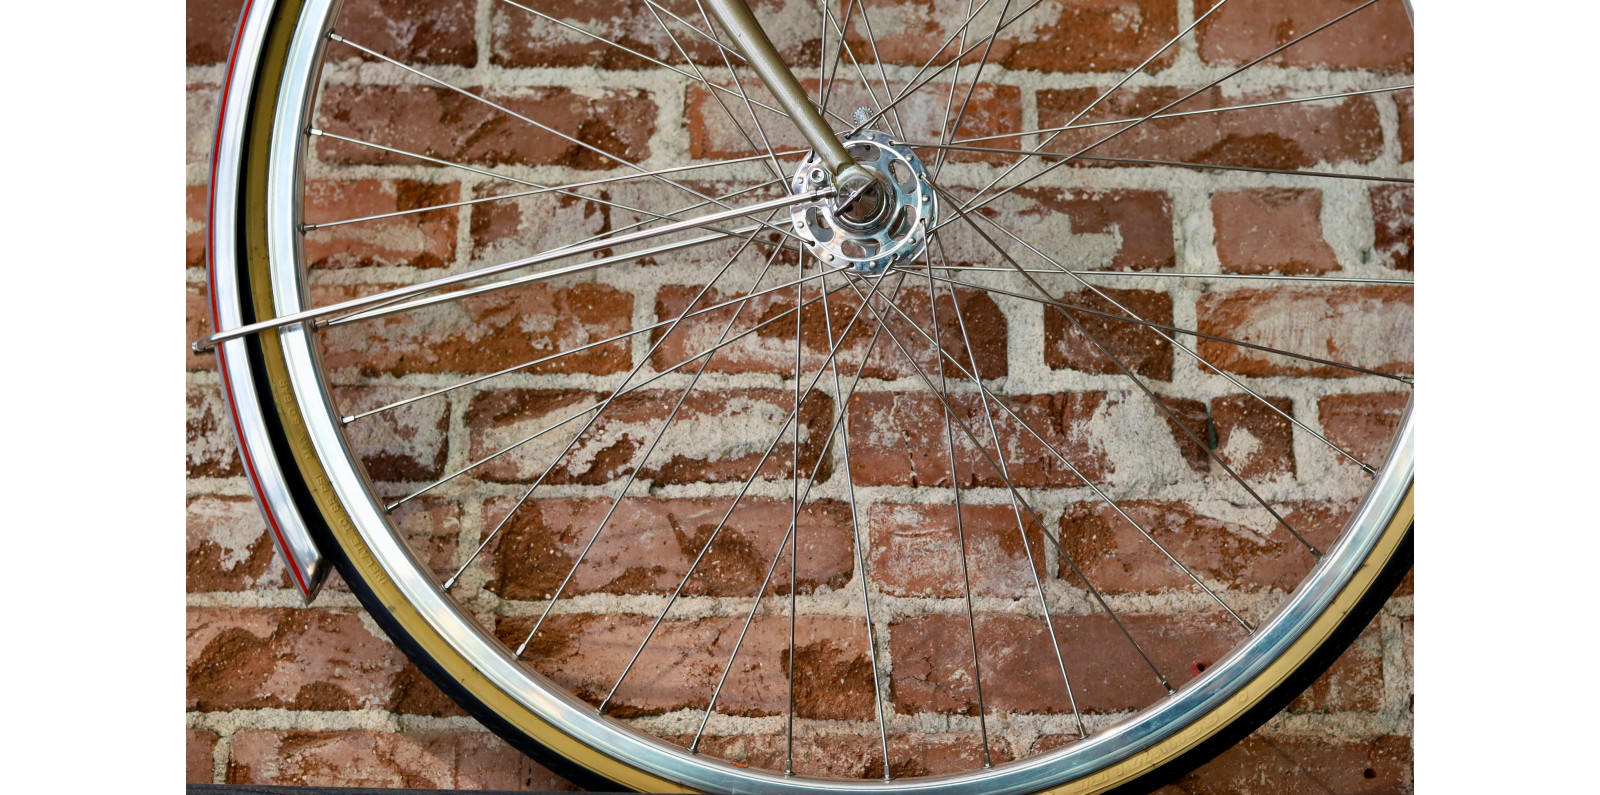 Comment réparer le rayon d'une roue de vélo ?